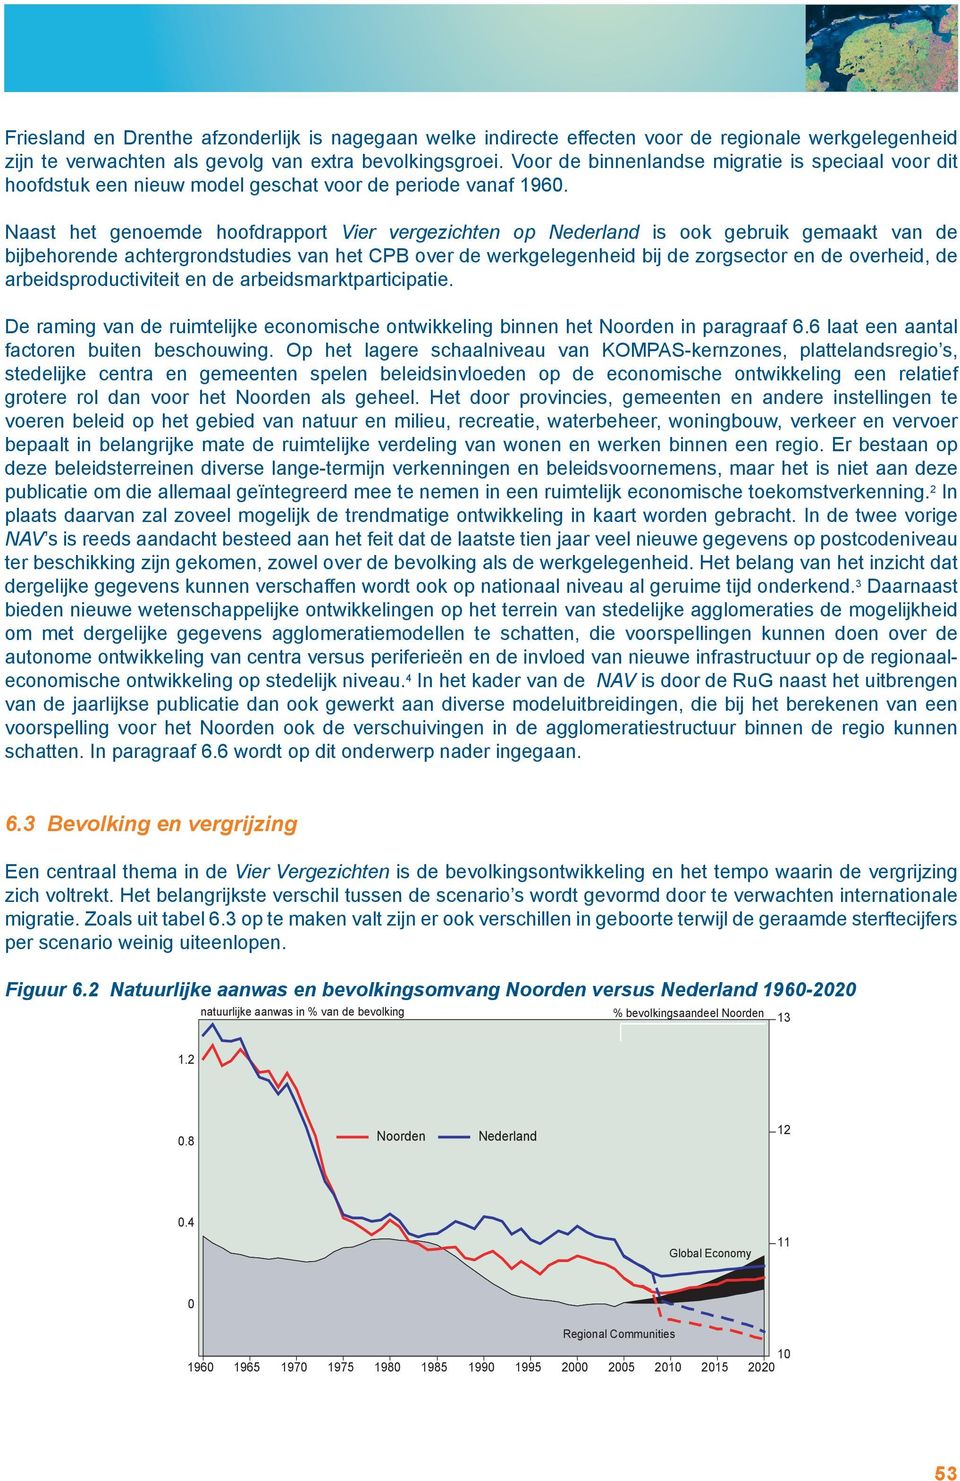 Naast het genoemde hoofdrapport Vier vergezichten op Nederland is ook gebruik gemaakt van de bijbehorende achtergrondstudies van het CPB over de werkgelegenheid bij de zorgsector en de overheid, de